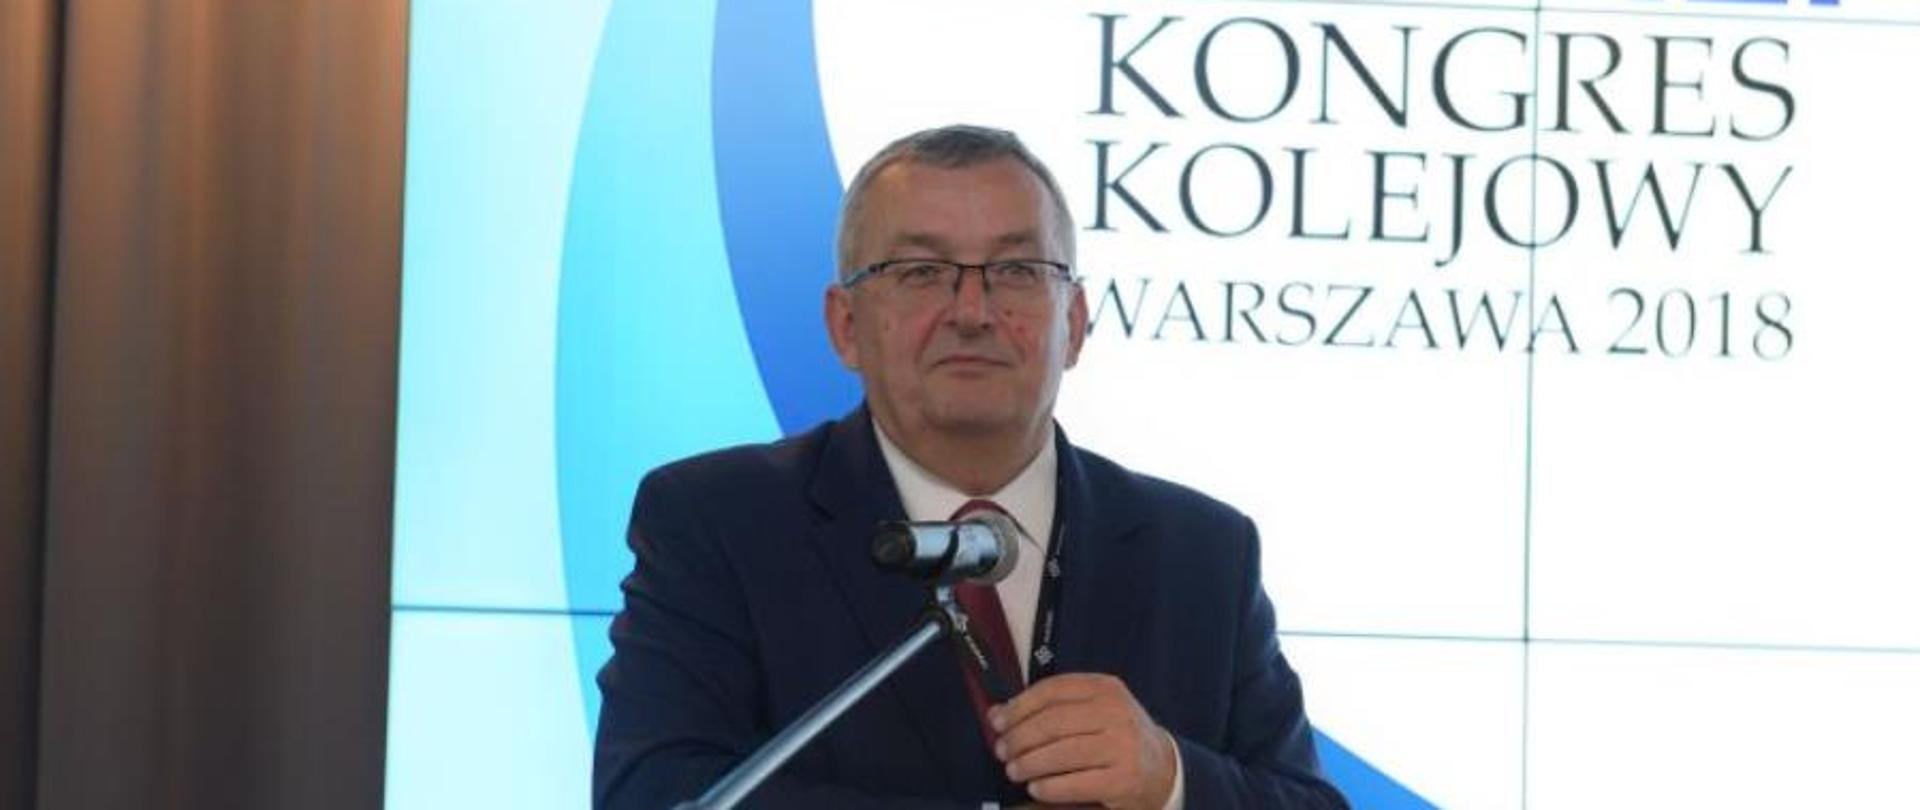 Minister A. Adamczyk otworzył Kongres Kolejowy